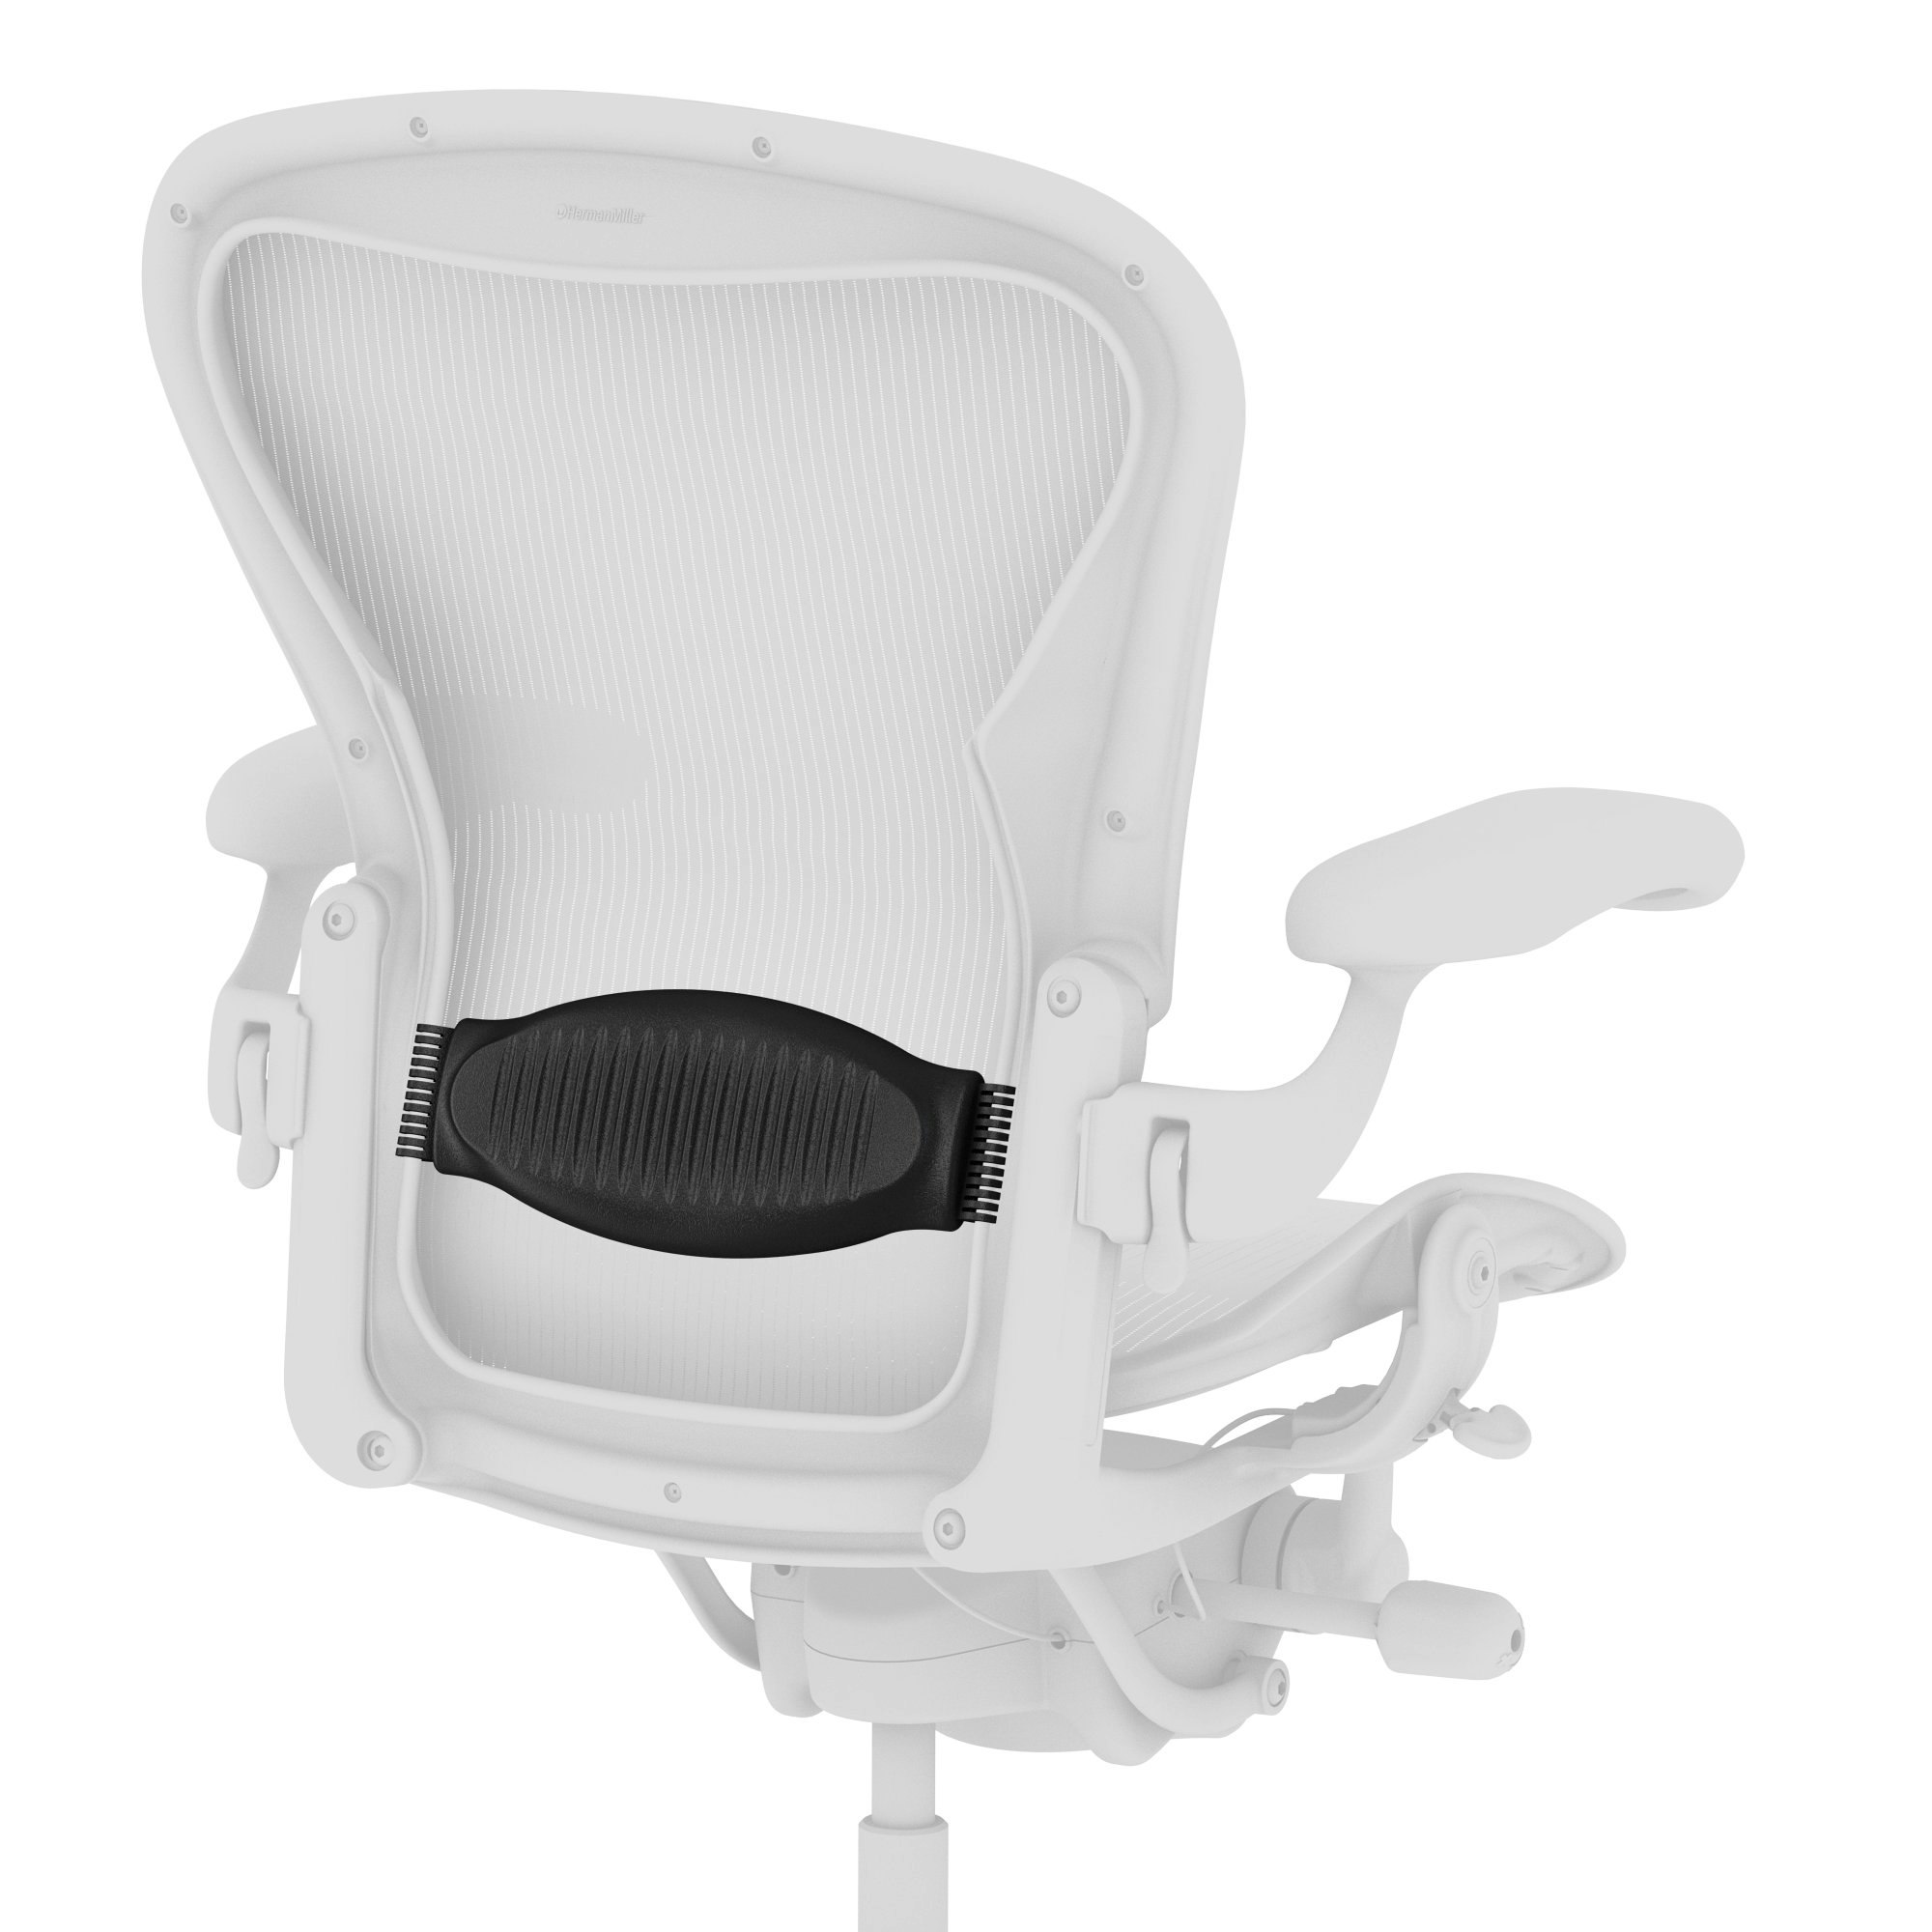 Size C Large Herman Miller Aeron Chair Tilt spacer; both sides Aeron Parts 